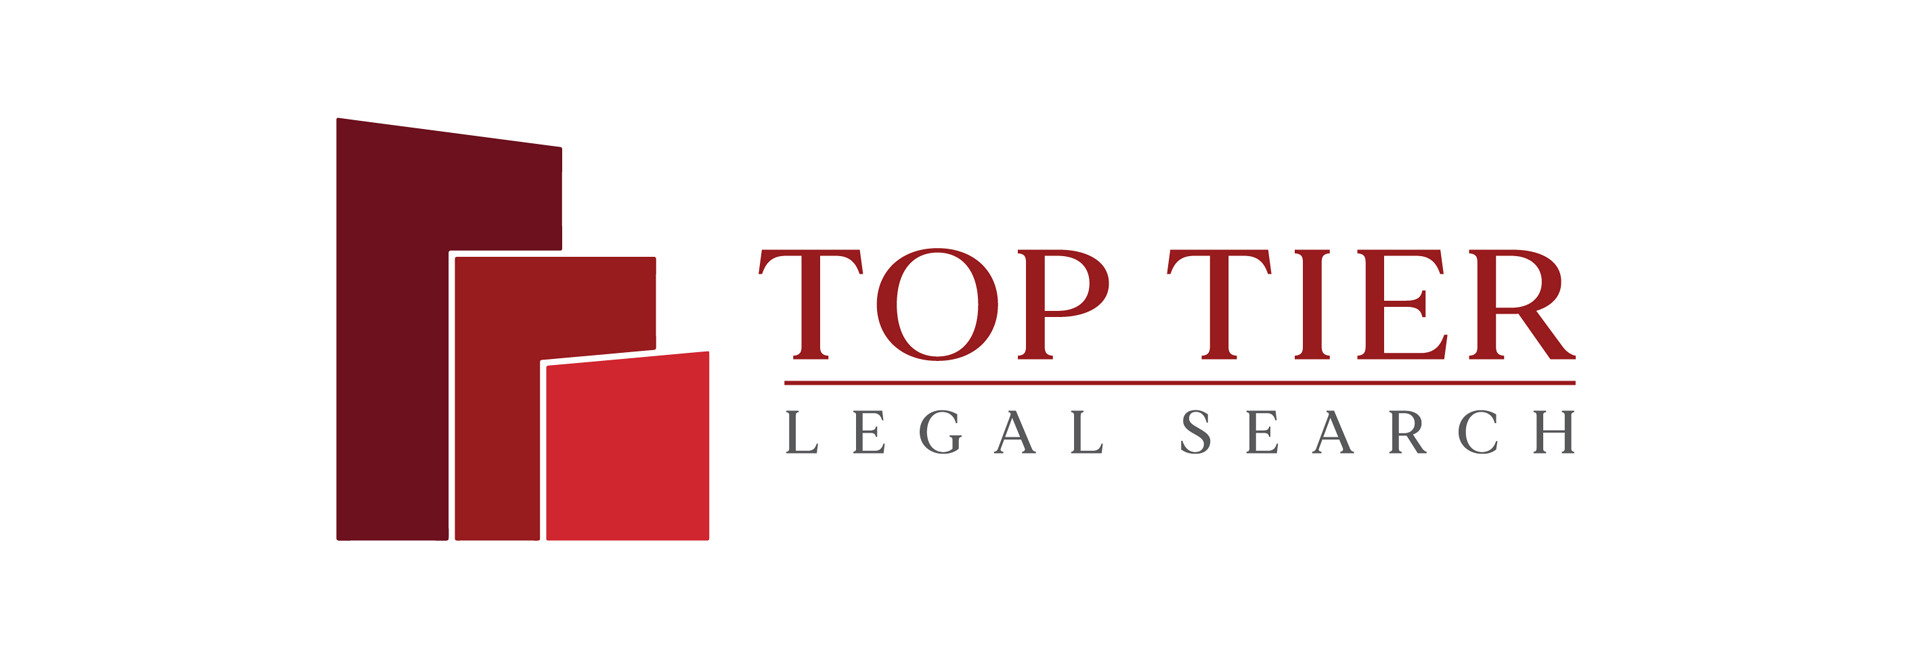 Top Tier Legal Search - Top Tier Legal Search